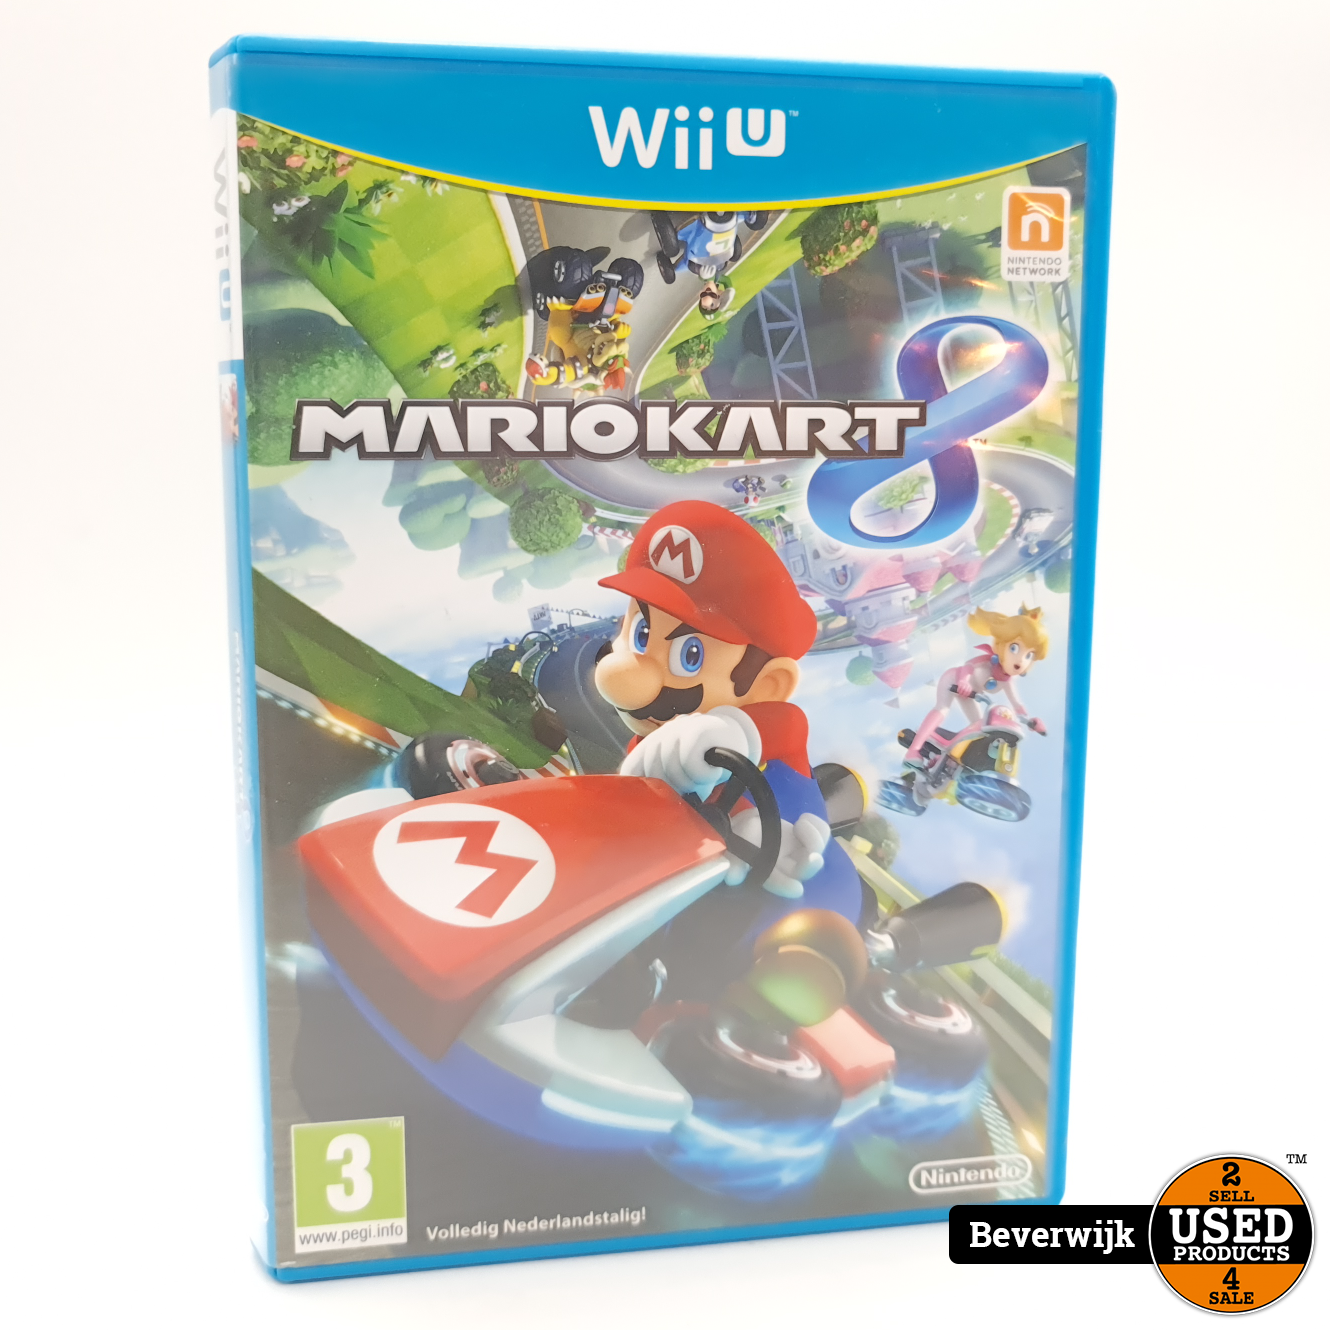 Nintendo 8 Wii U Game - Staat - Used Products Beverwijk